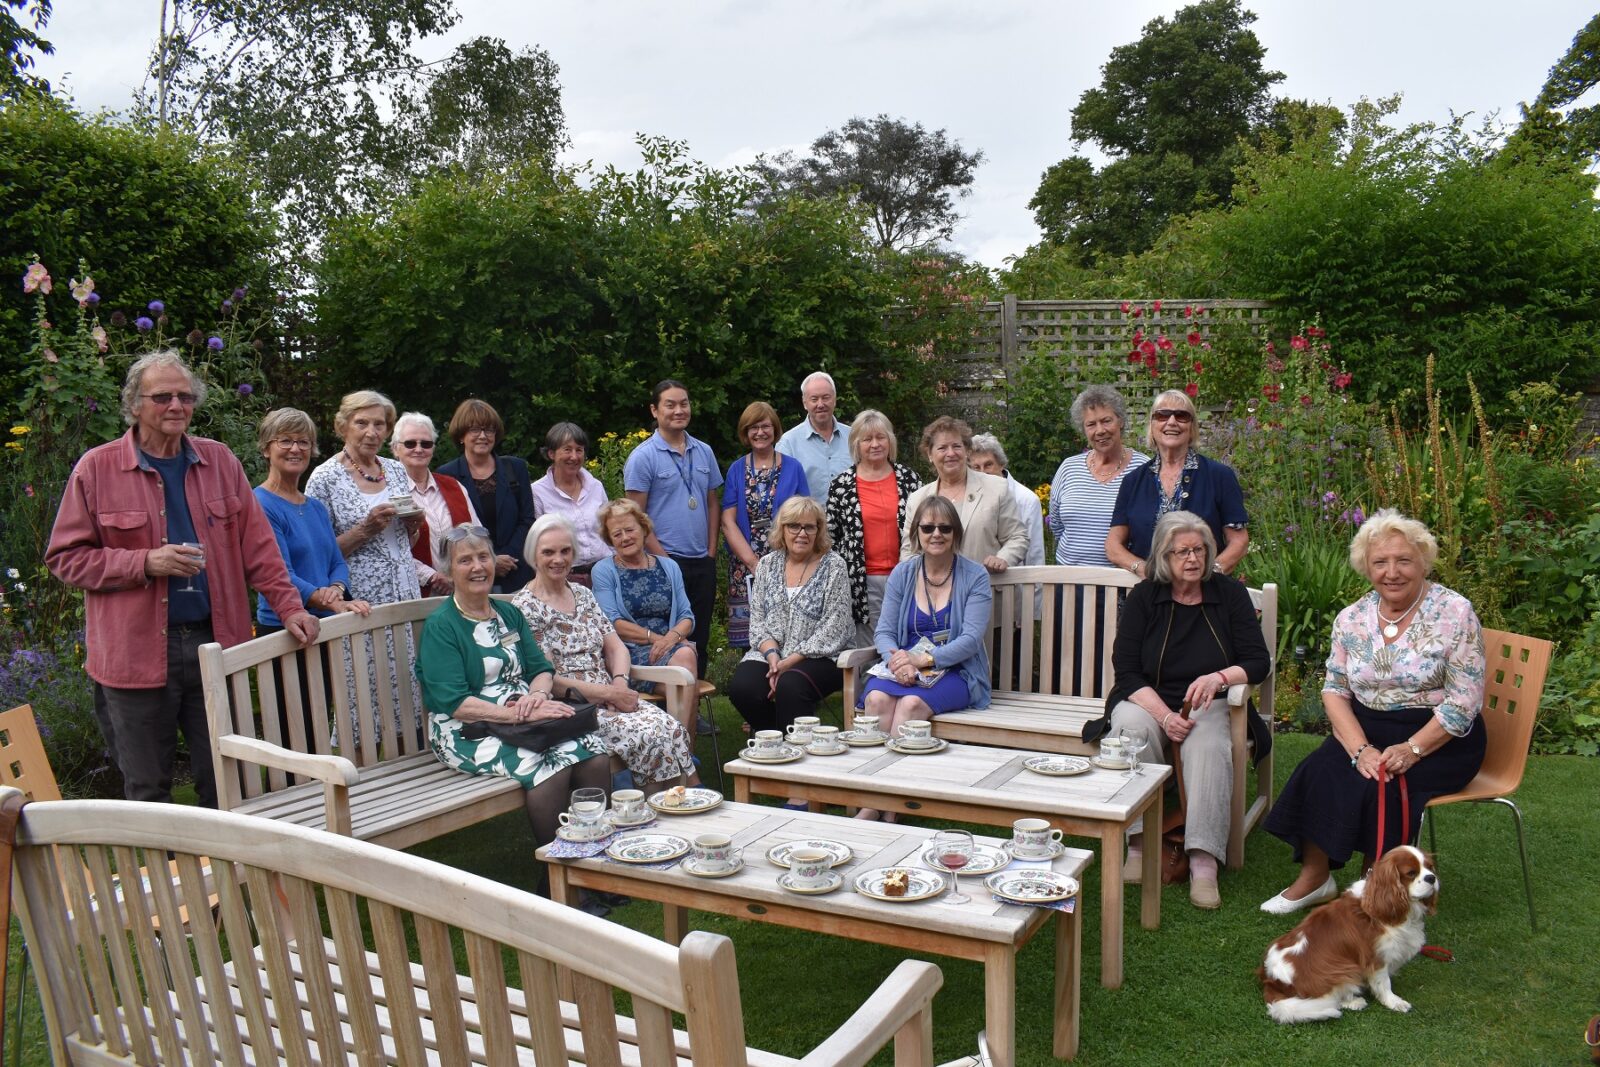 Volunteers in the garden at Jane Austen's House